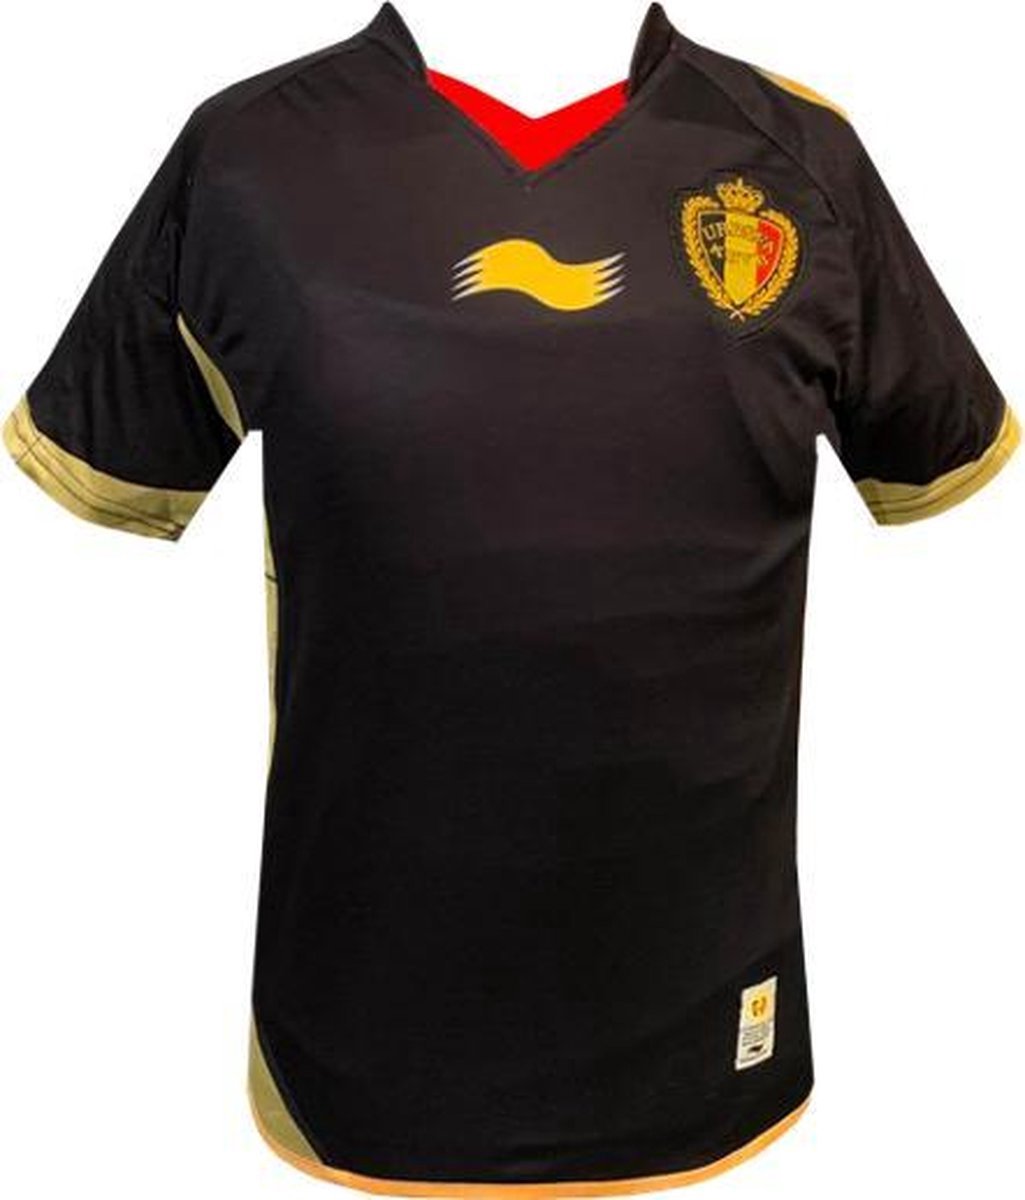 Rode Duivels - Vintage Official Match Shirt 2012 - Kinderen - Zwart - Maat: 6 jaar